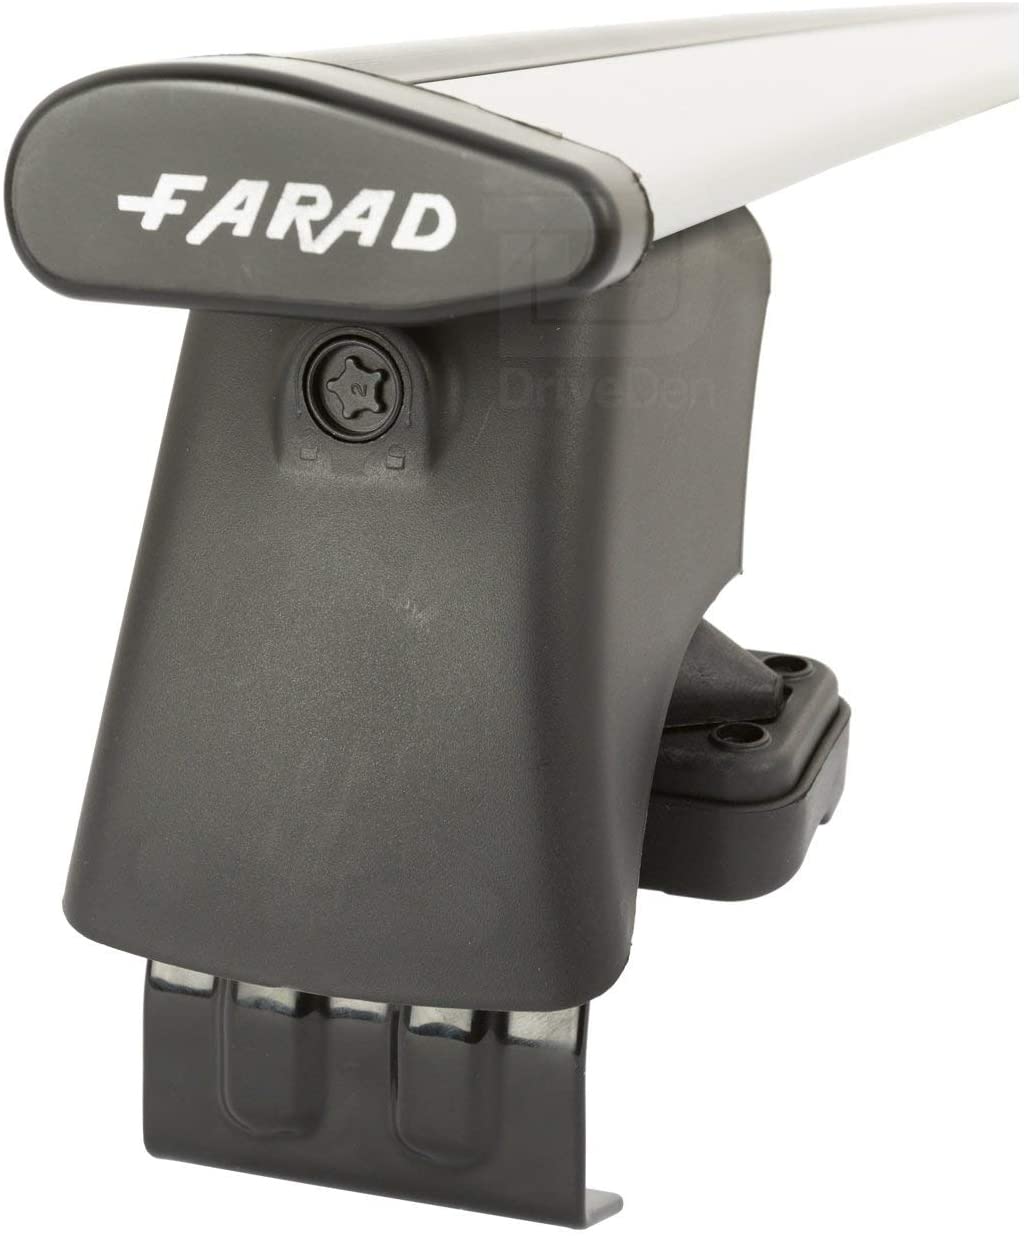 FARAD-Kit H2 per barre portatutto - Nissan Pixo 2009-2014 (senza corrimano)